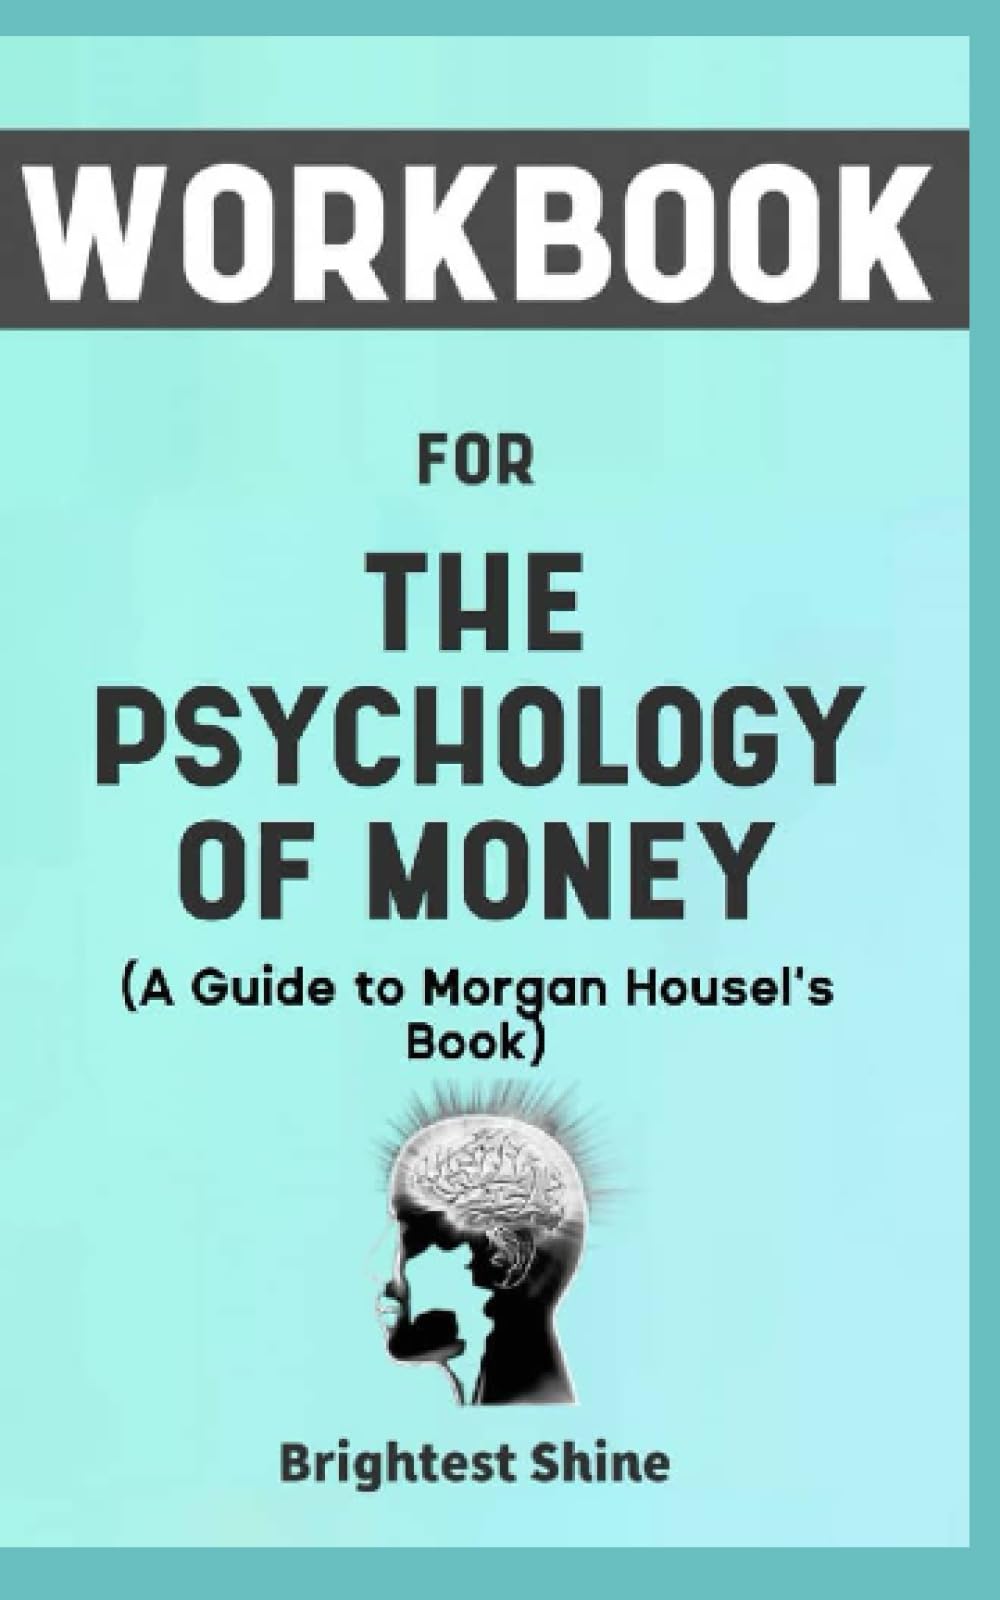 Libros recomendados para aprender a invertir: Resumen de The Psychology of  Money de Morgan Housel - 9 lecciones - Diario de Bolsa